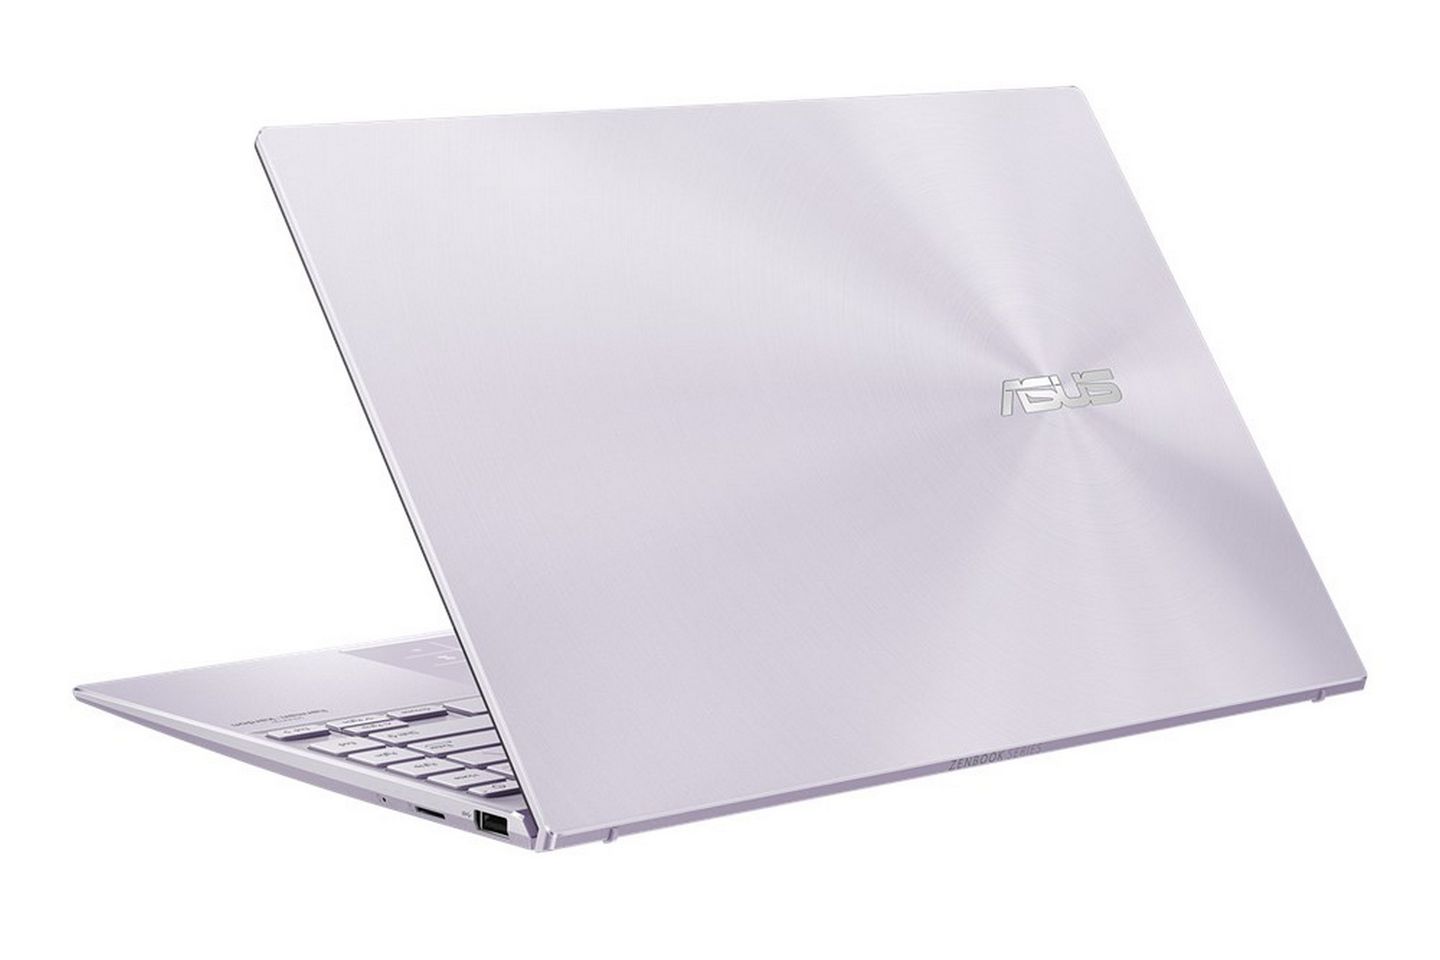 Asus ZenBook dòng sản phẩm laptop cao cấp đang được mọi người hết sức chú ý